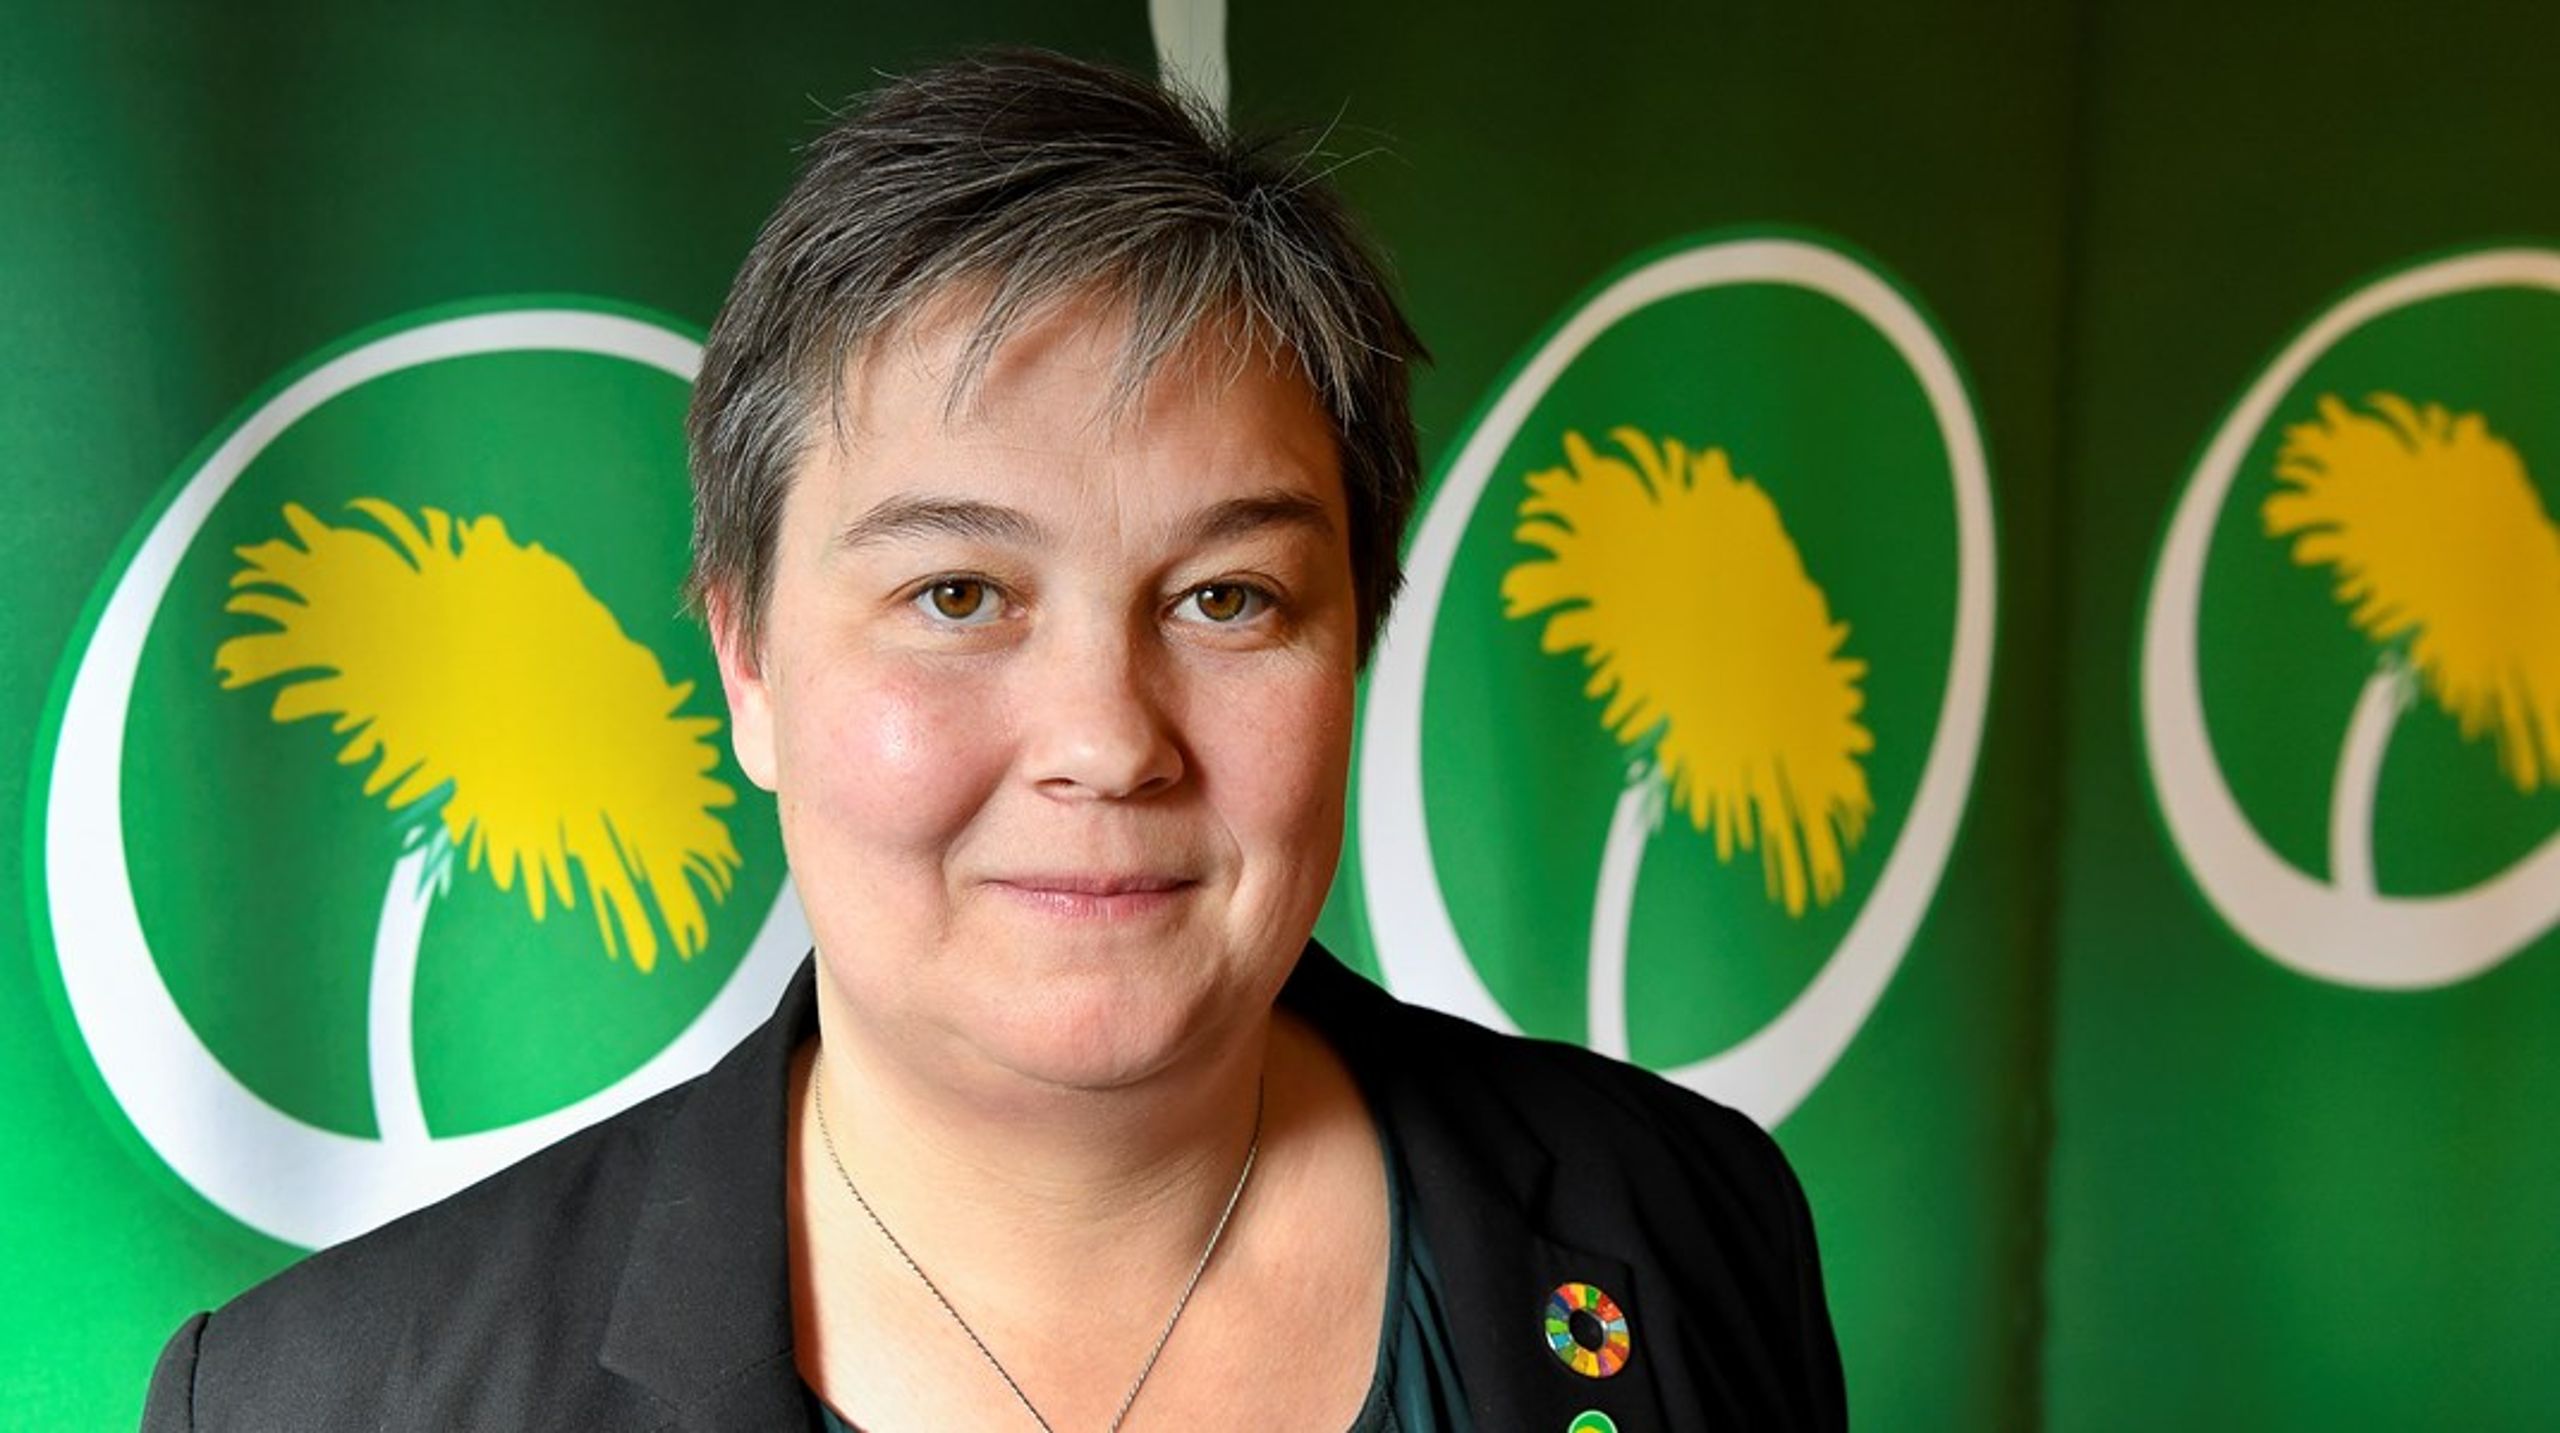 Emma Nohrén ska leda arbetet i riksdagens miljö- och jordbruksutskott. Vid sin sida kommer hon att ha Kjell-Arne Ottosson (KD) som blir utskottets vice ordförande. "Jag tror det kommer att bli ett bra presidium", säger Nohrén.